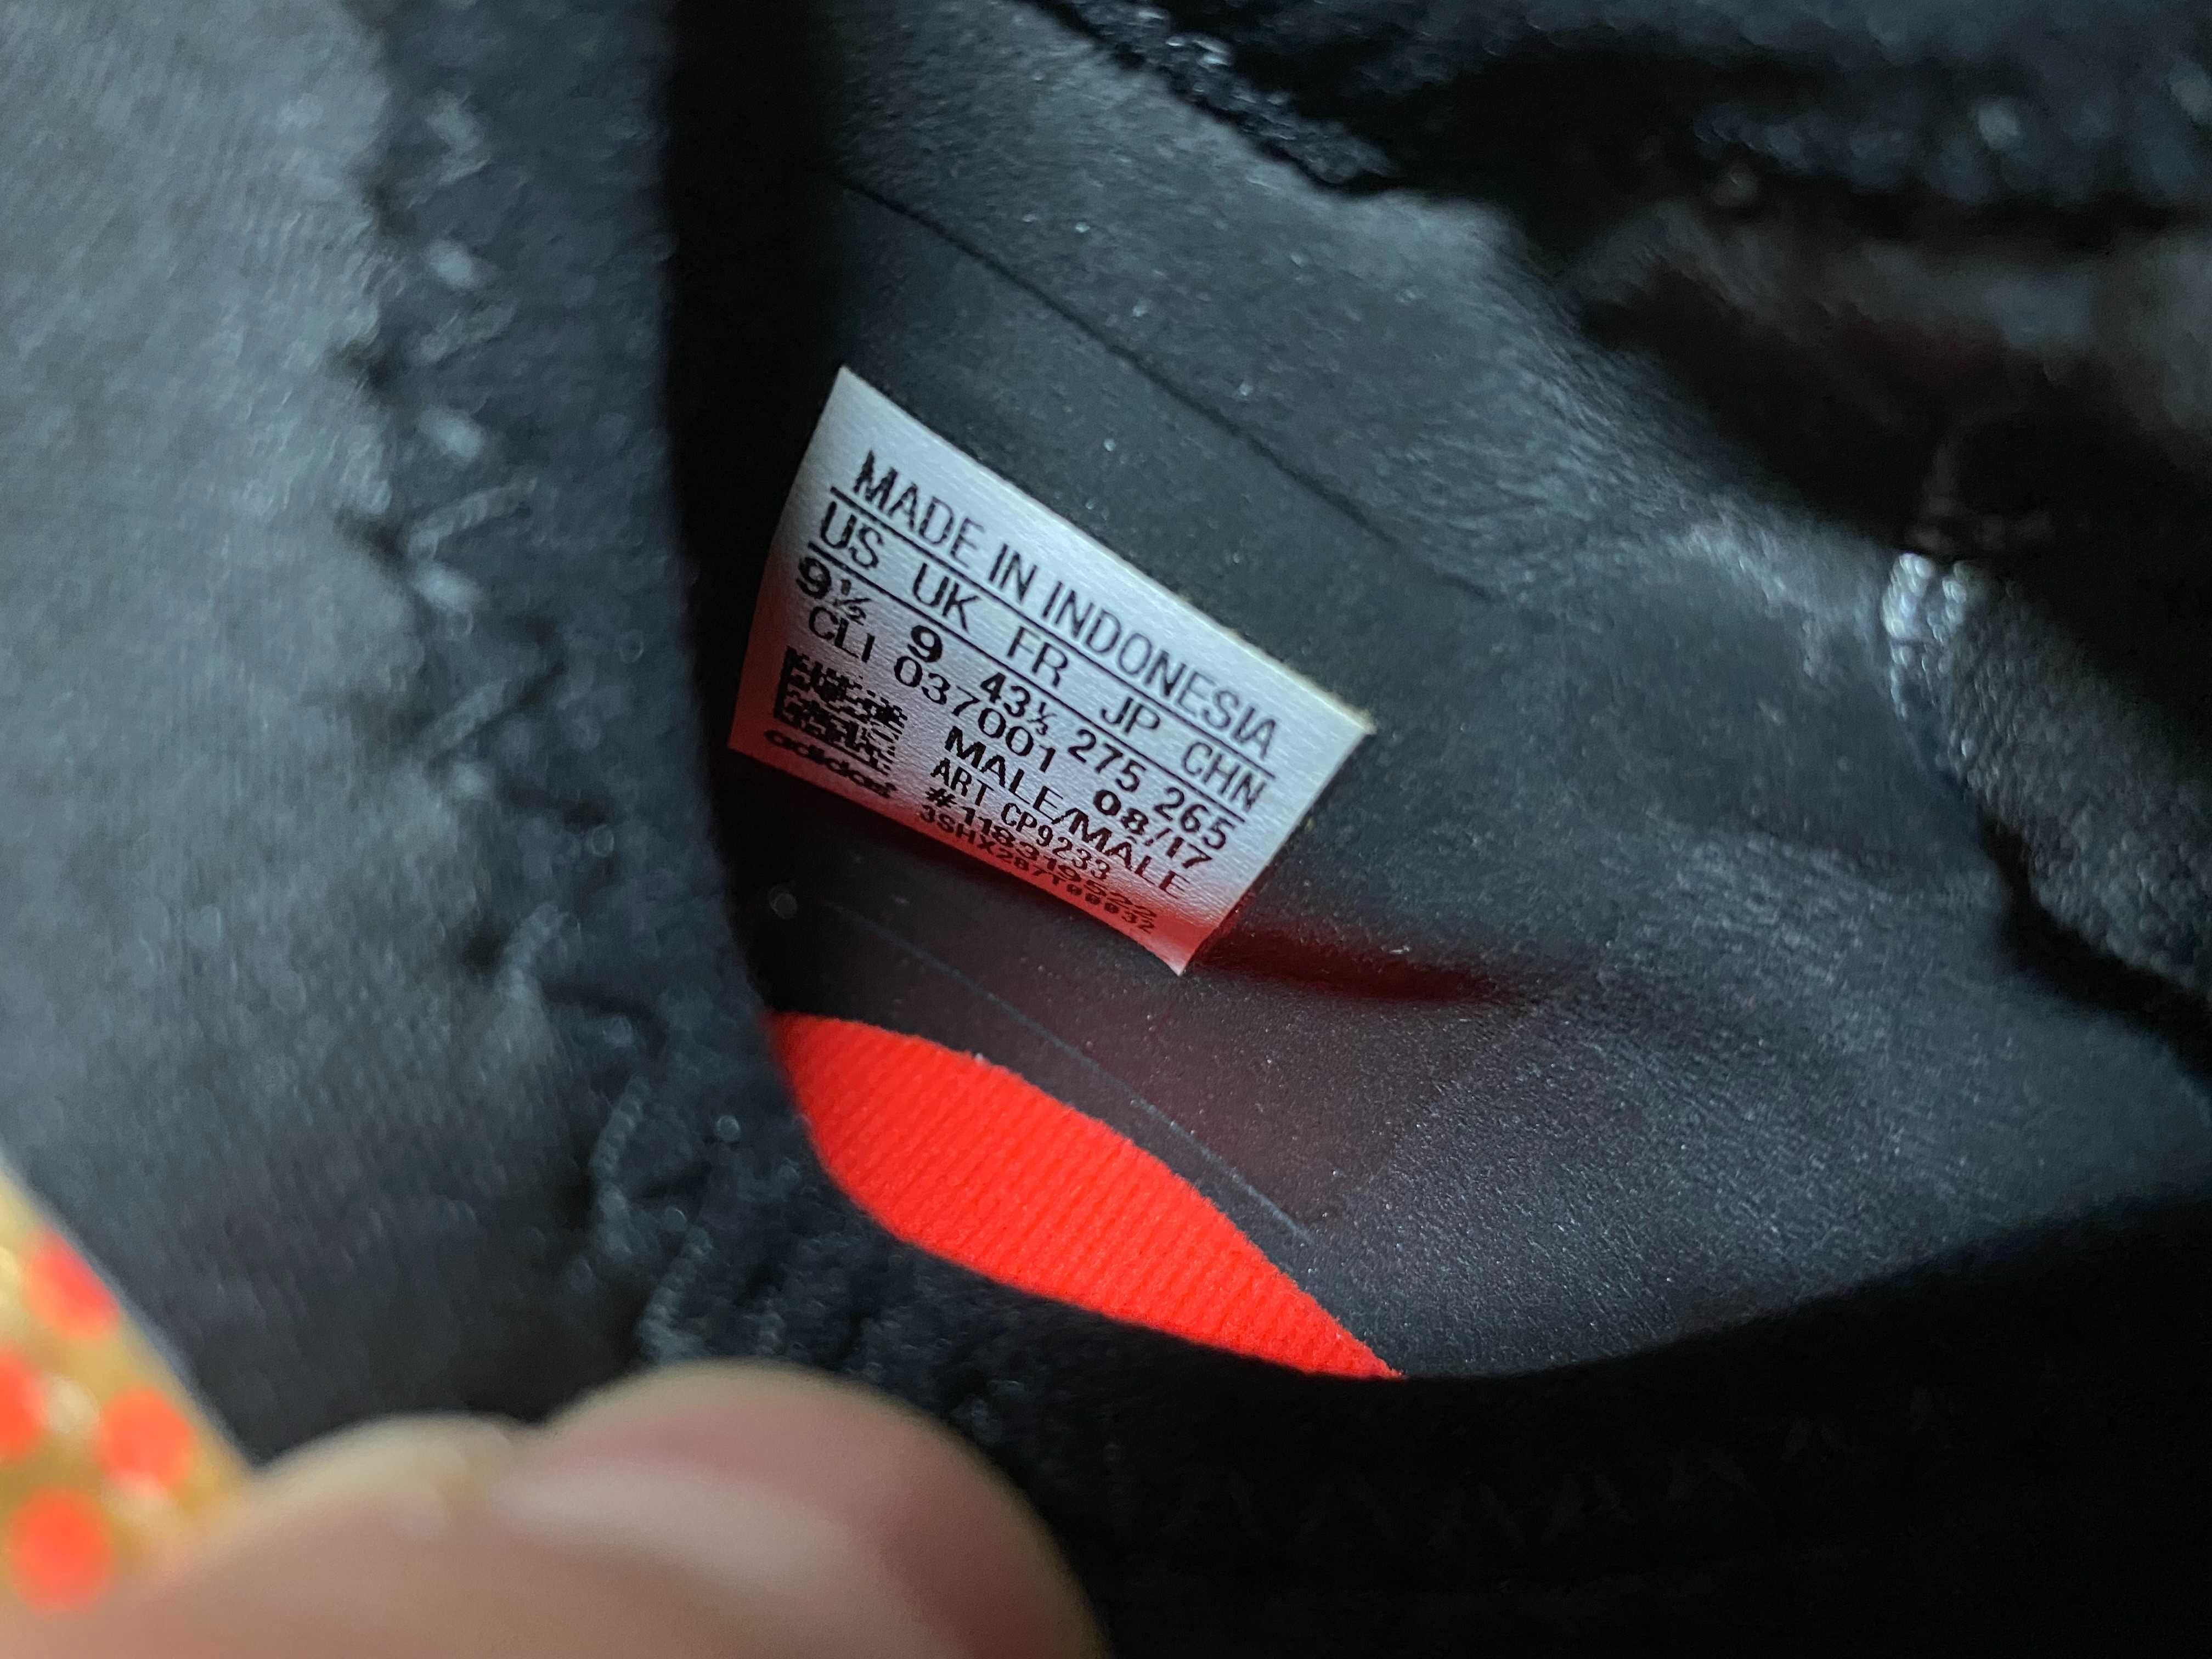 ''Adidas X 17.3 Ag''оригинални футболни обувки 43 номер